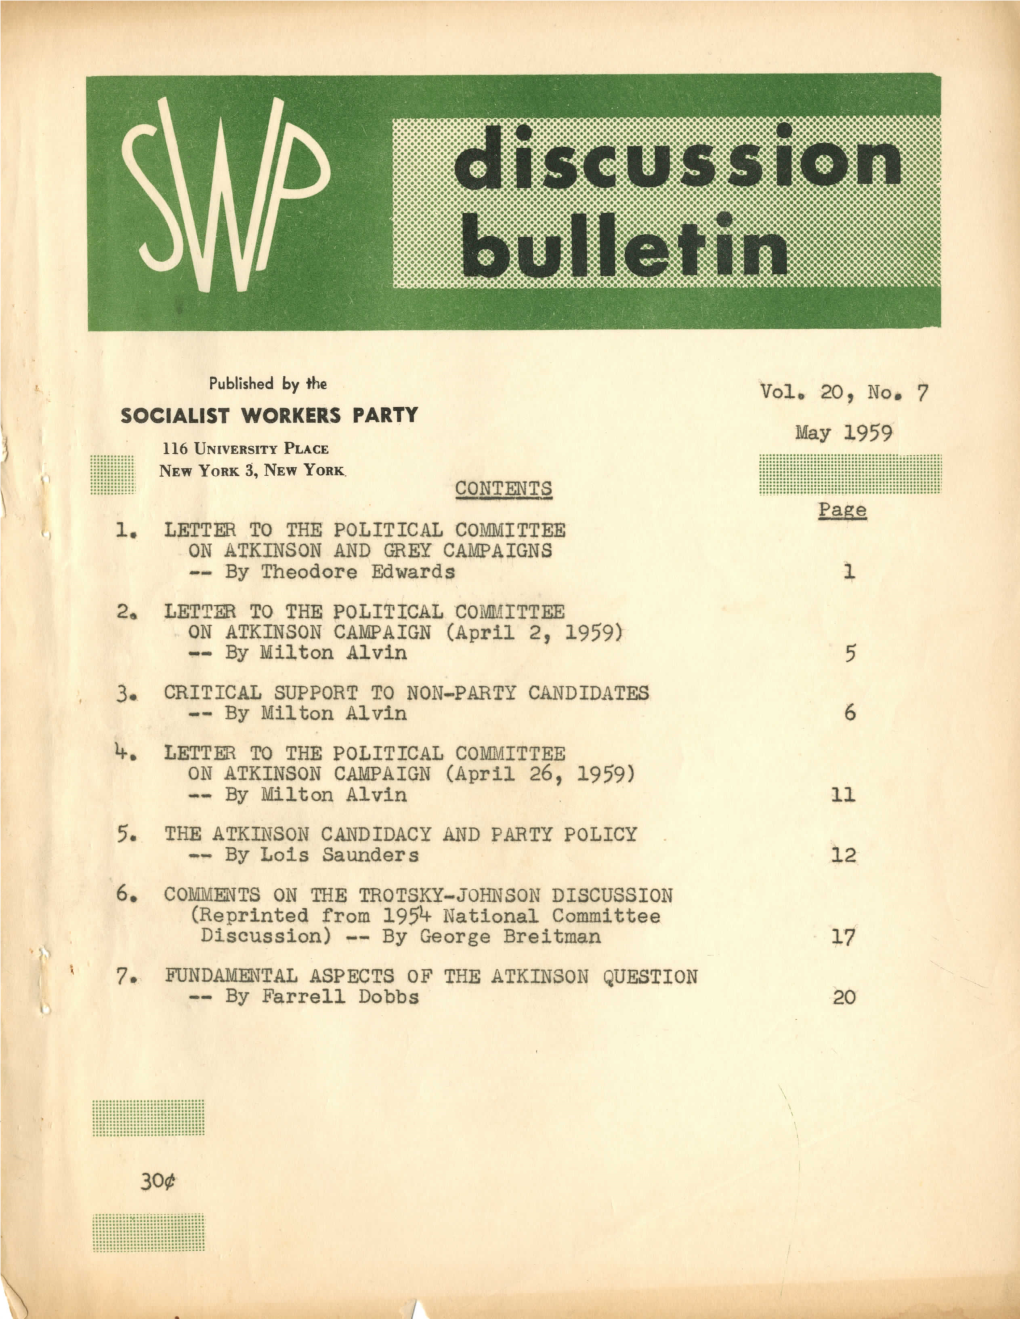 Volume 20, No. 7, May 1959